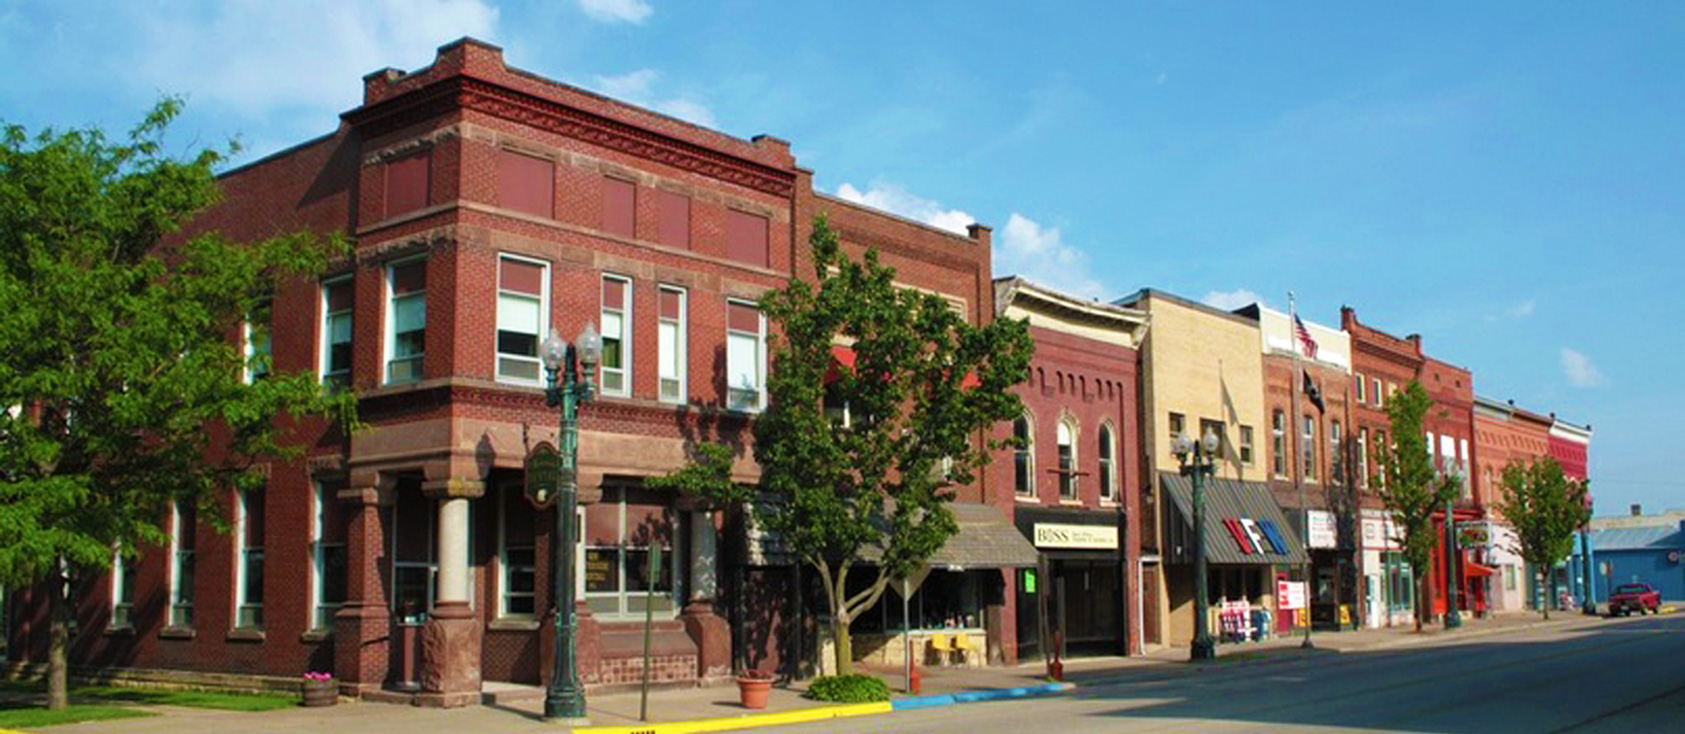 Large photo of historic downtown Savanna, Illinois